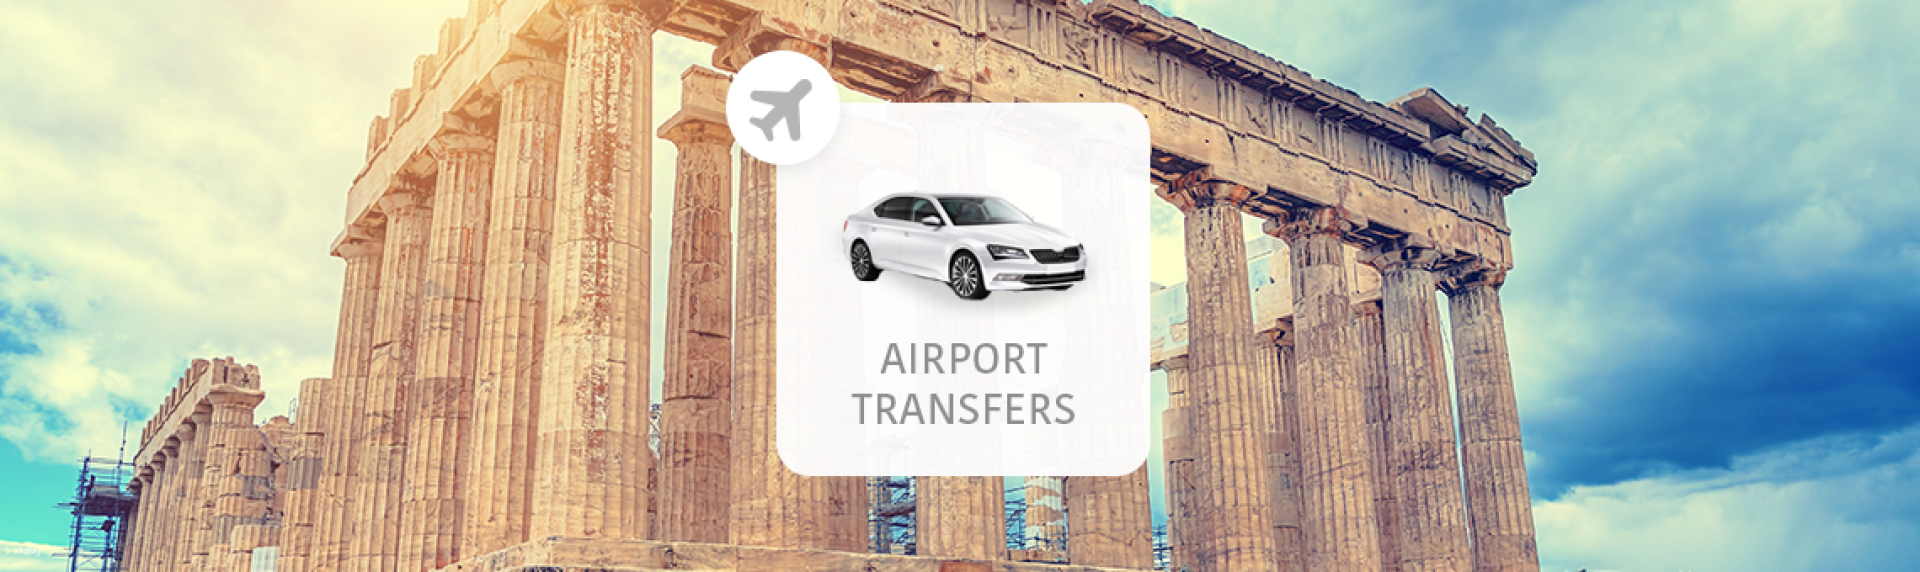 希臘-雅典機場(ATH)往返雅典市區(含接機舉牌服務)| 機場接送專車